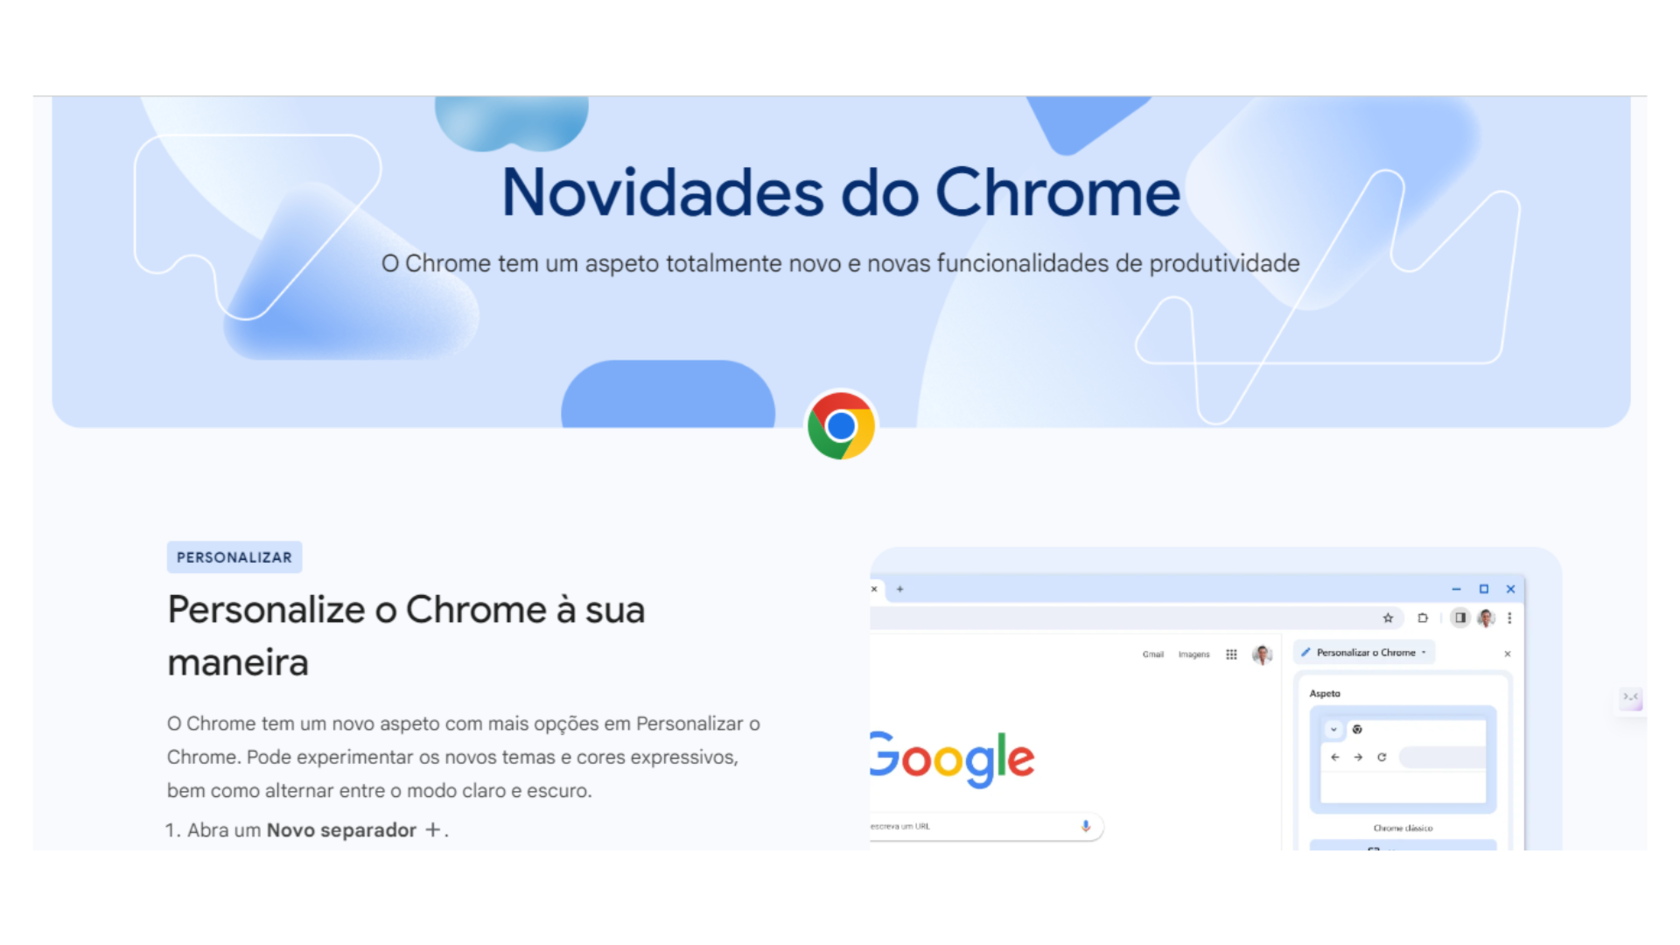 Apresentação do site do google sobre as novidades referente ao navegador Chrome